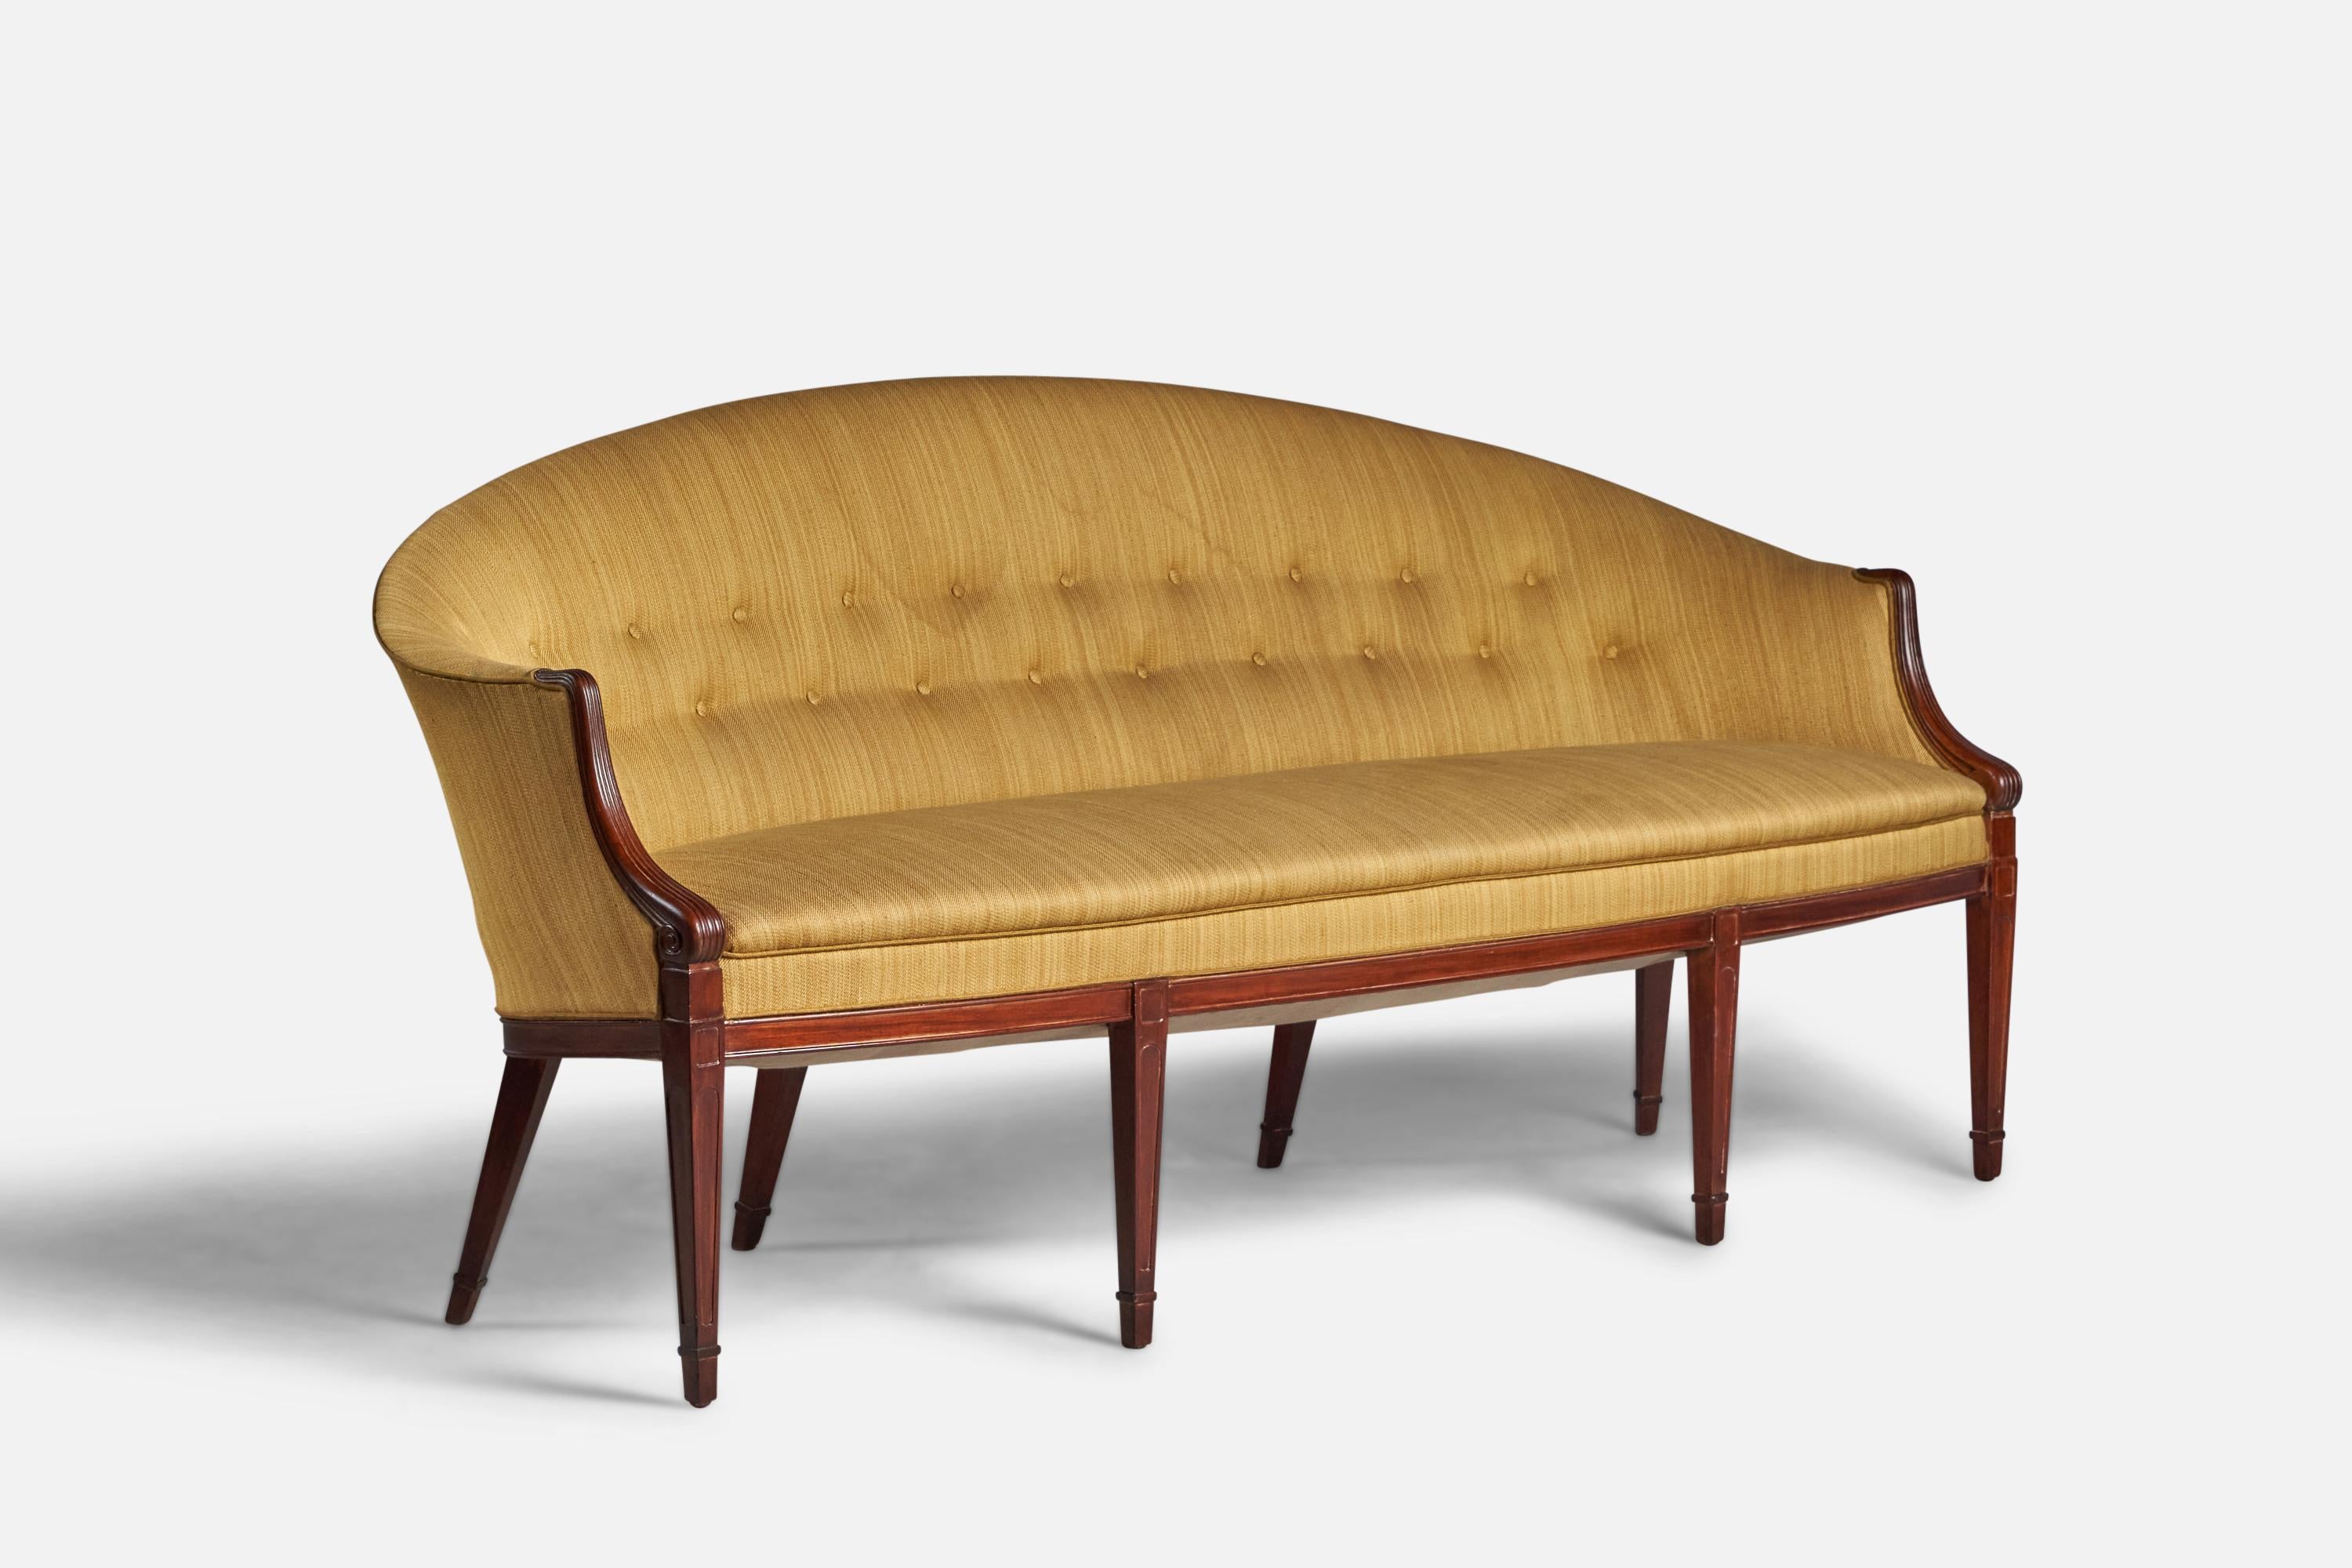 Canapé ou sofa en acajou teinté et tissu en crin de cheval jaune, conçu et produit par Frits Henningsen, Danemark, années 1940.

Hauteur d'assise de 18 pouces

